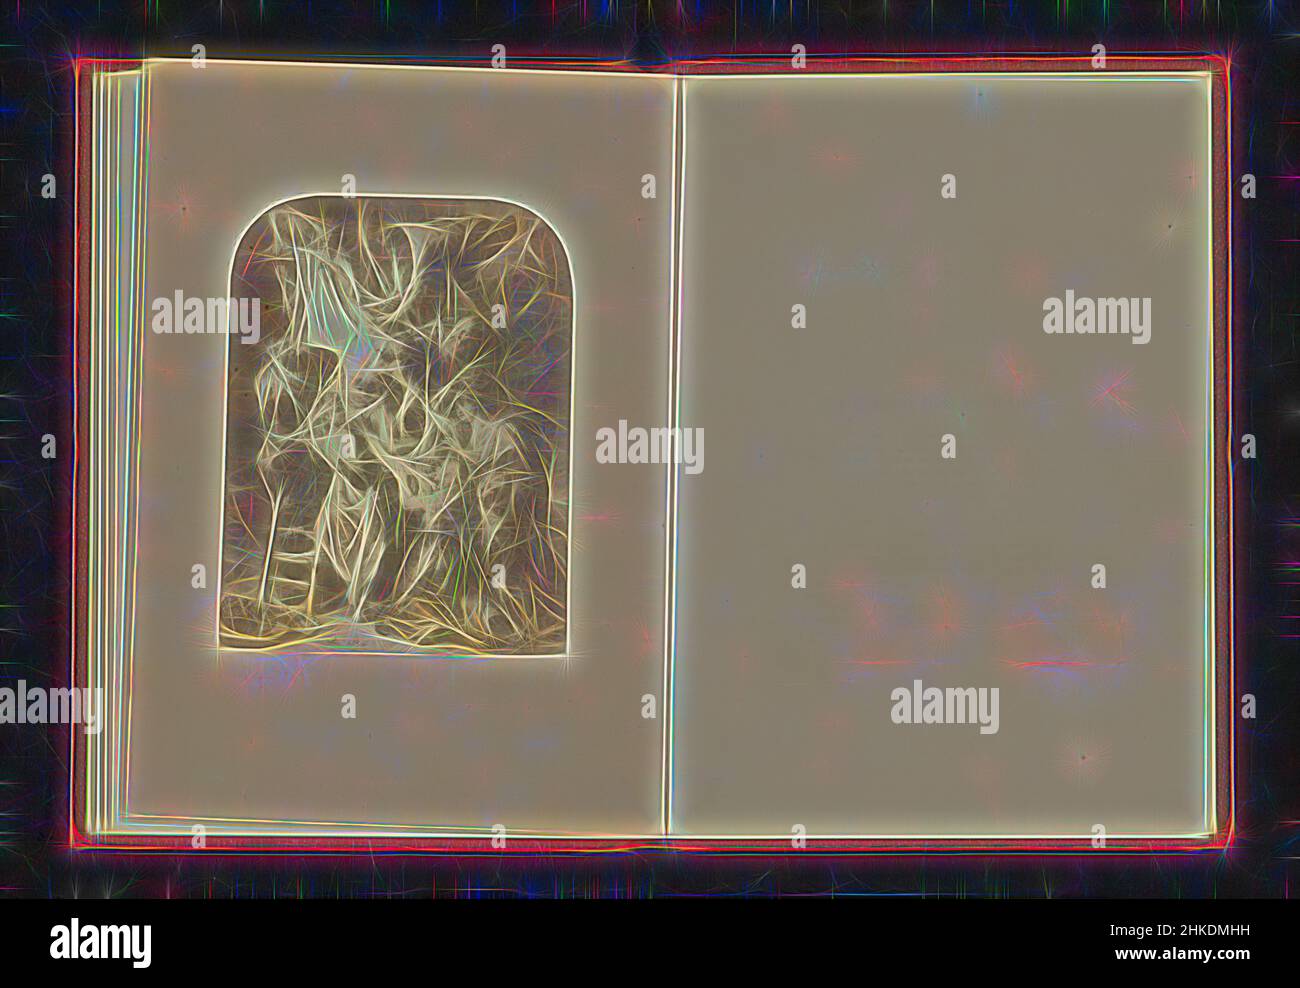 Inspiriert von der Fotoreproduktion eines Drucks nach einem Gemälde, das den Abstieg vom Kreuz darstellt, Negretti & Zambra, nach: Peter Paul Rubens, c. 1853 - in oder vor 1863, Albumendruck, Höhe 121 mm × Breite 91 mm, neu erfunden von Artotop. Klassische Kunst neu erfunden mit einem modernen Twist. Design von warmen fröhlichen Leuchten der Helligkeit und Lichtstrahl Strahlkraft. Fotografie inspiriert von Surrealismus und Futurismus, umarmt dynamische Energie der modernen Technologie, Bewegung, Geschwindigkeit und Kultur zu revolutionieren Stockfoto